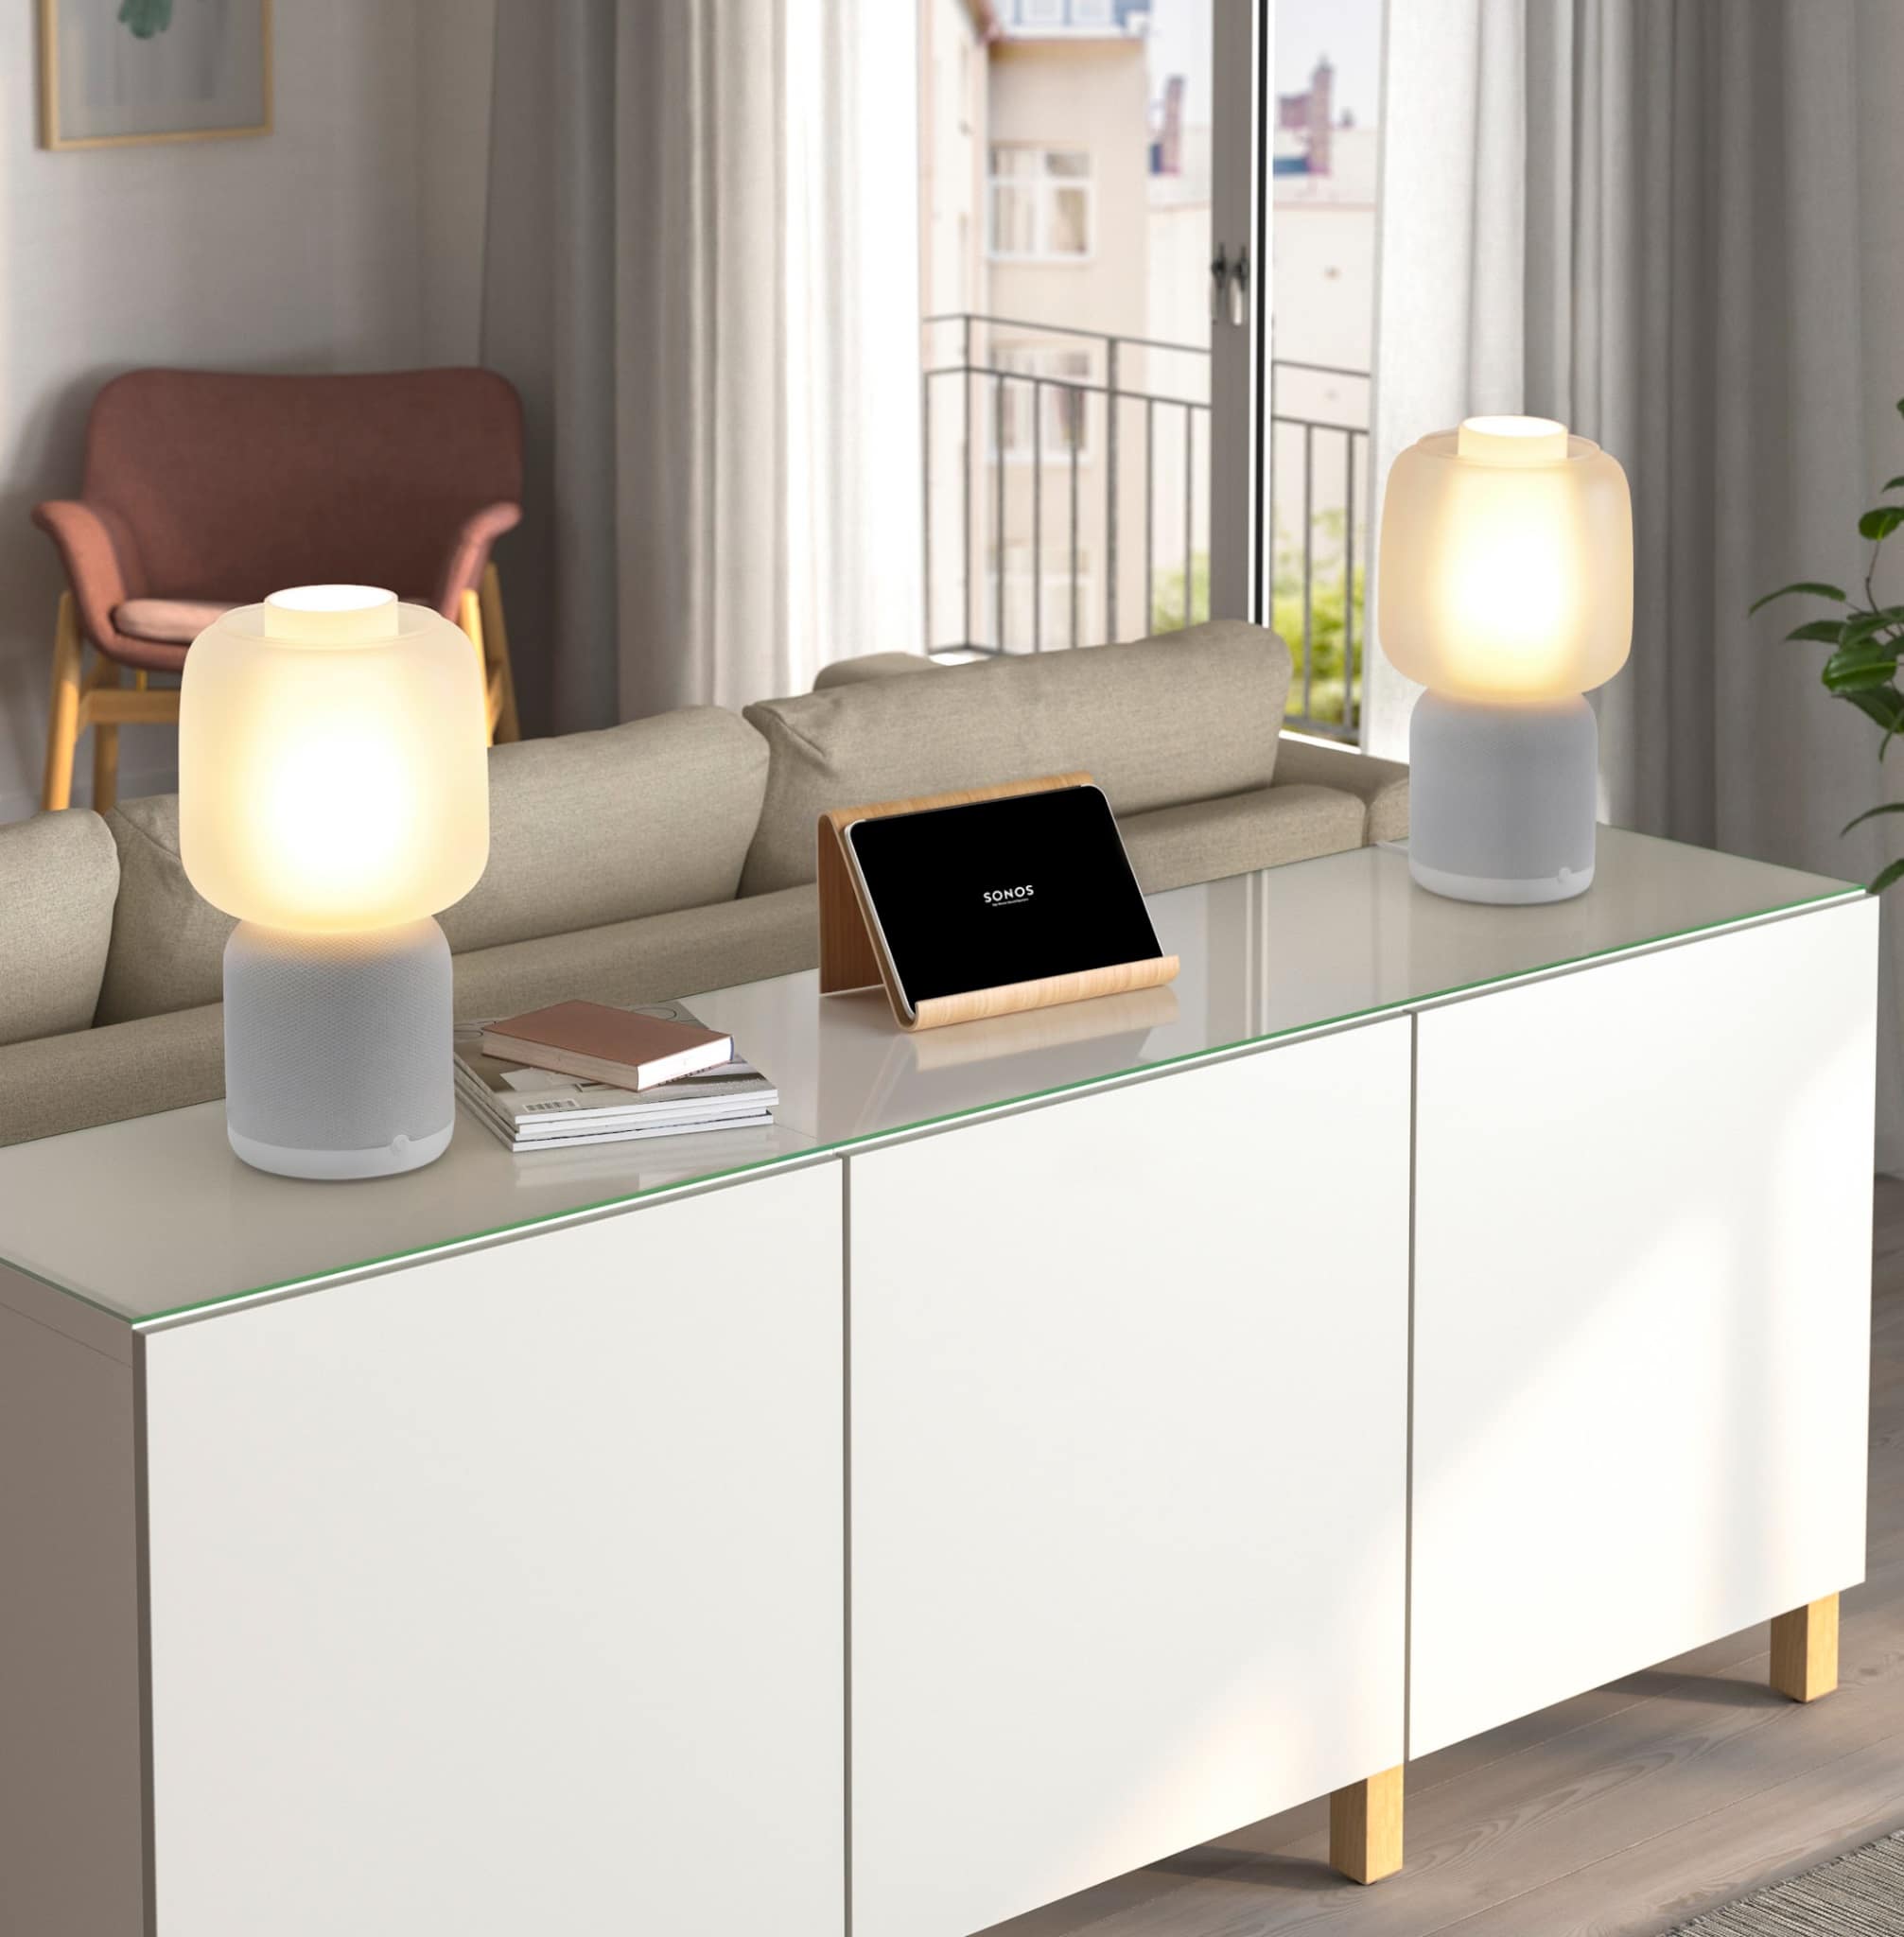 uitlijning Durf Op tijd Sonos and IKEA: Symfonisk table lamp and new radio program